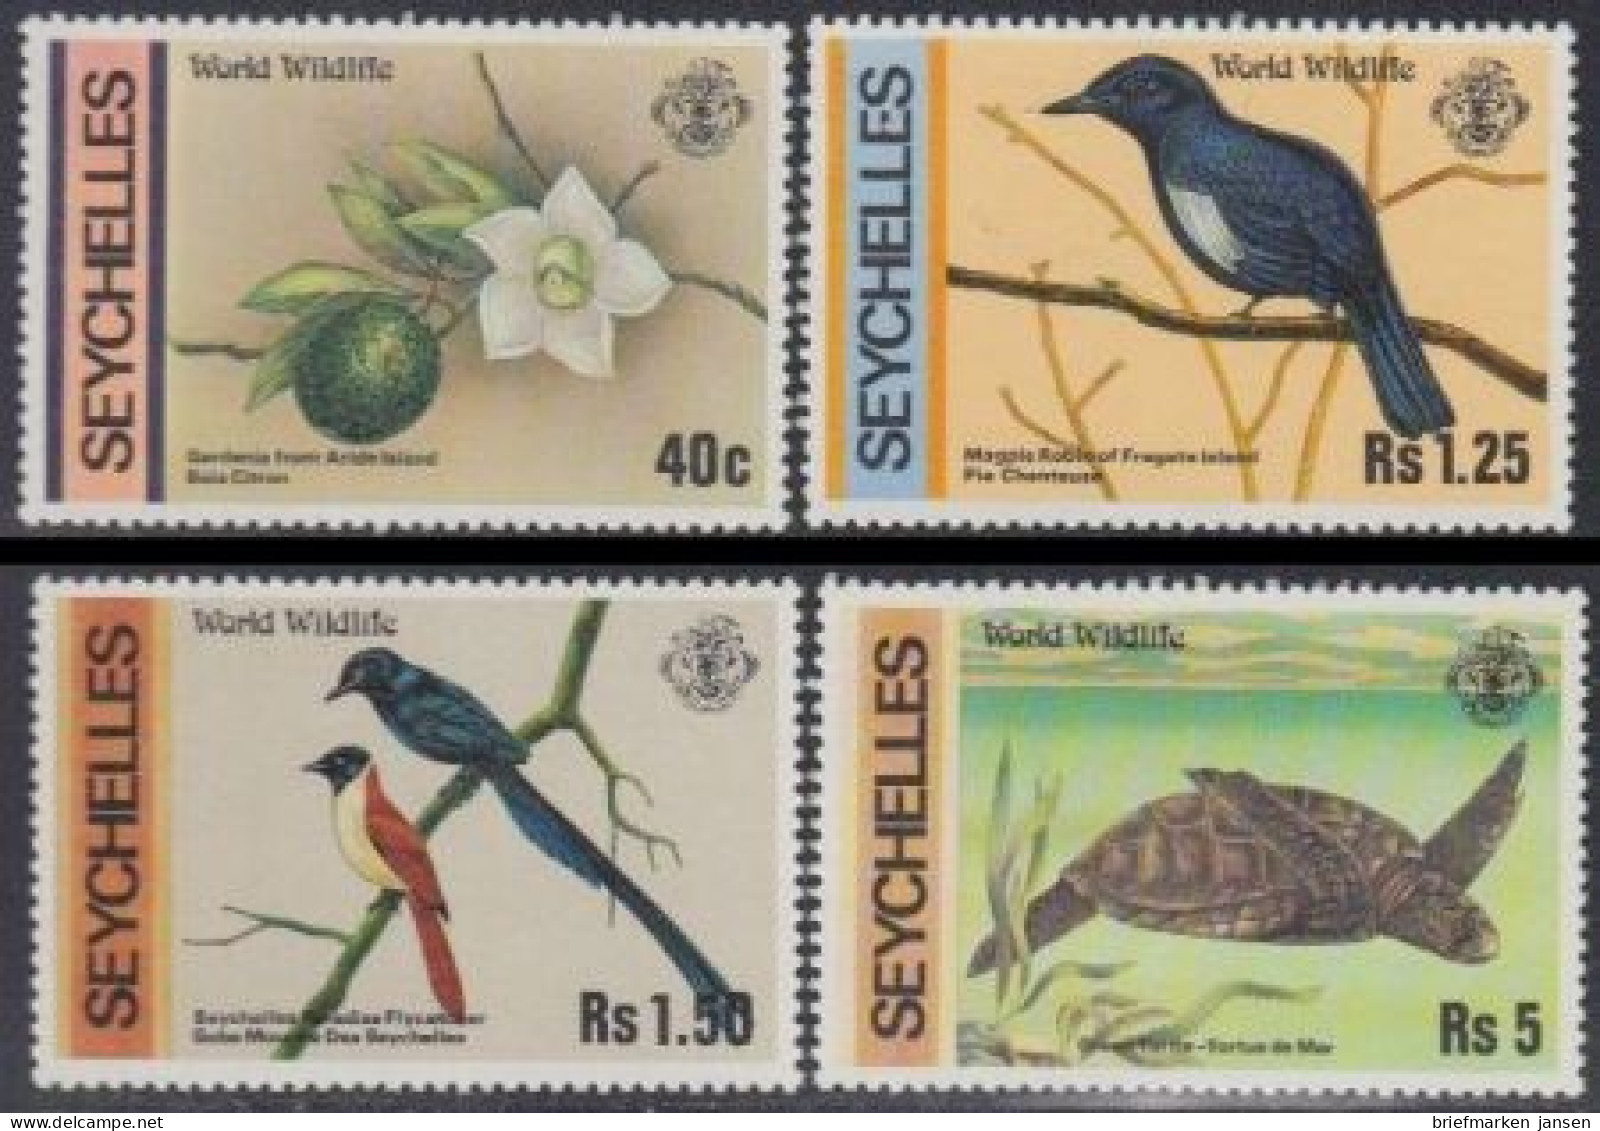 Seychellen Mi.Nr. 422-25 Naturschutz, Gardenie, Vögel, Schildkröte (4 Werte) - Seychelles (1976-...)